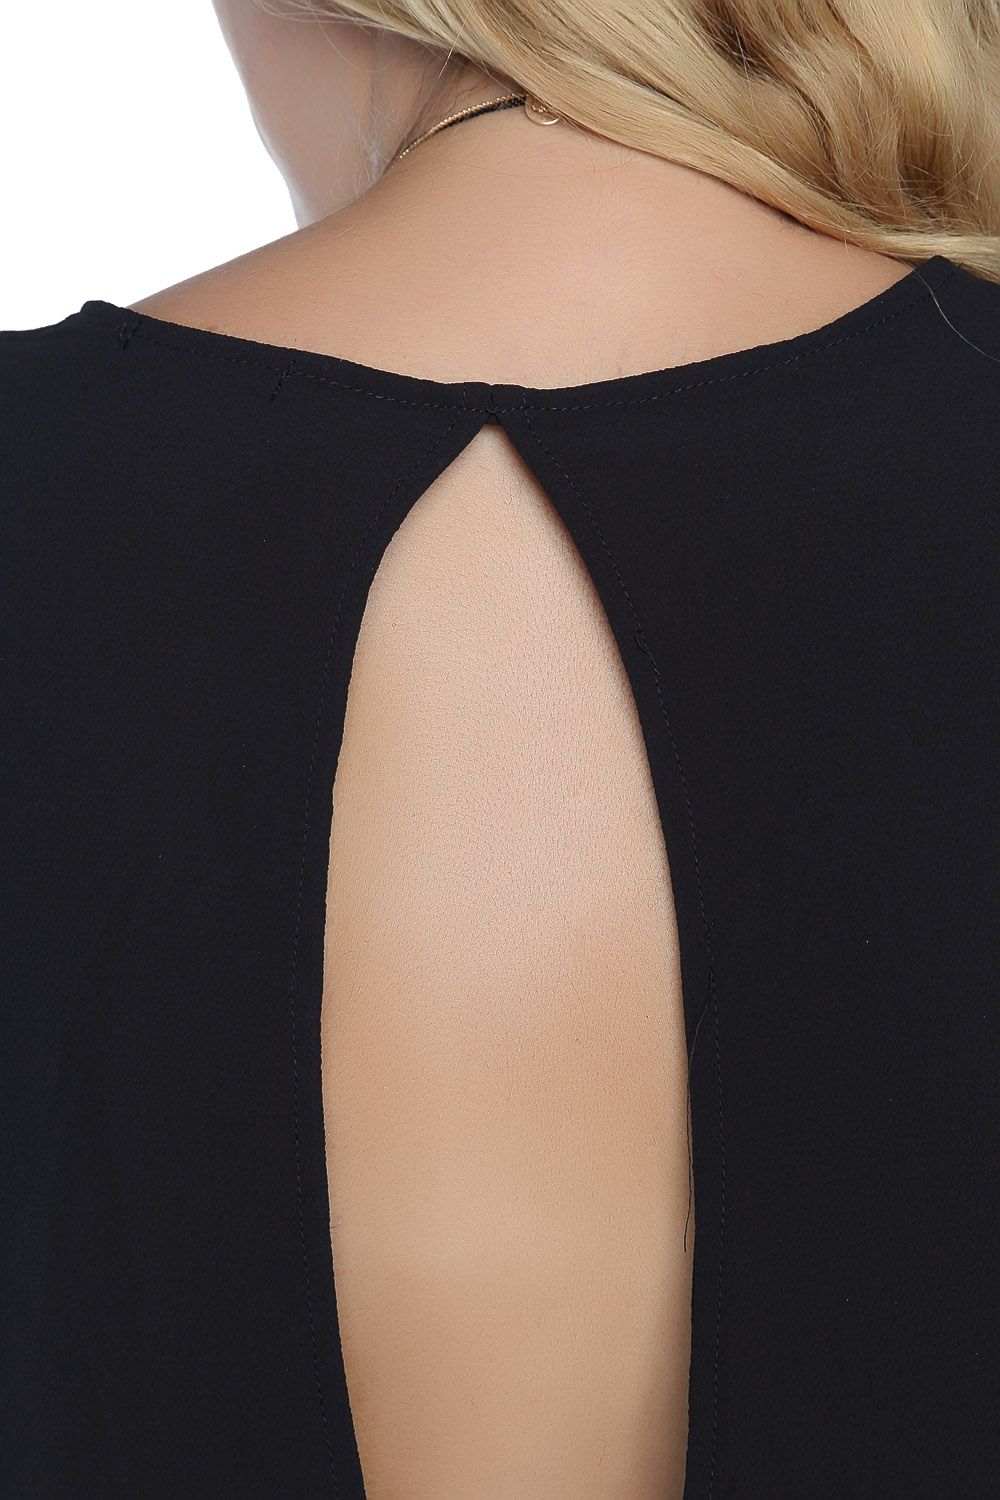 Black chiffon blouse with keyhole back - Szua Store